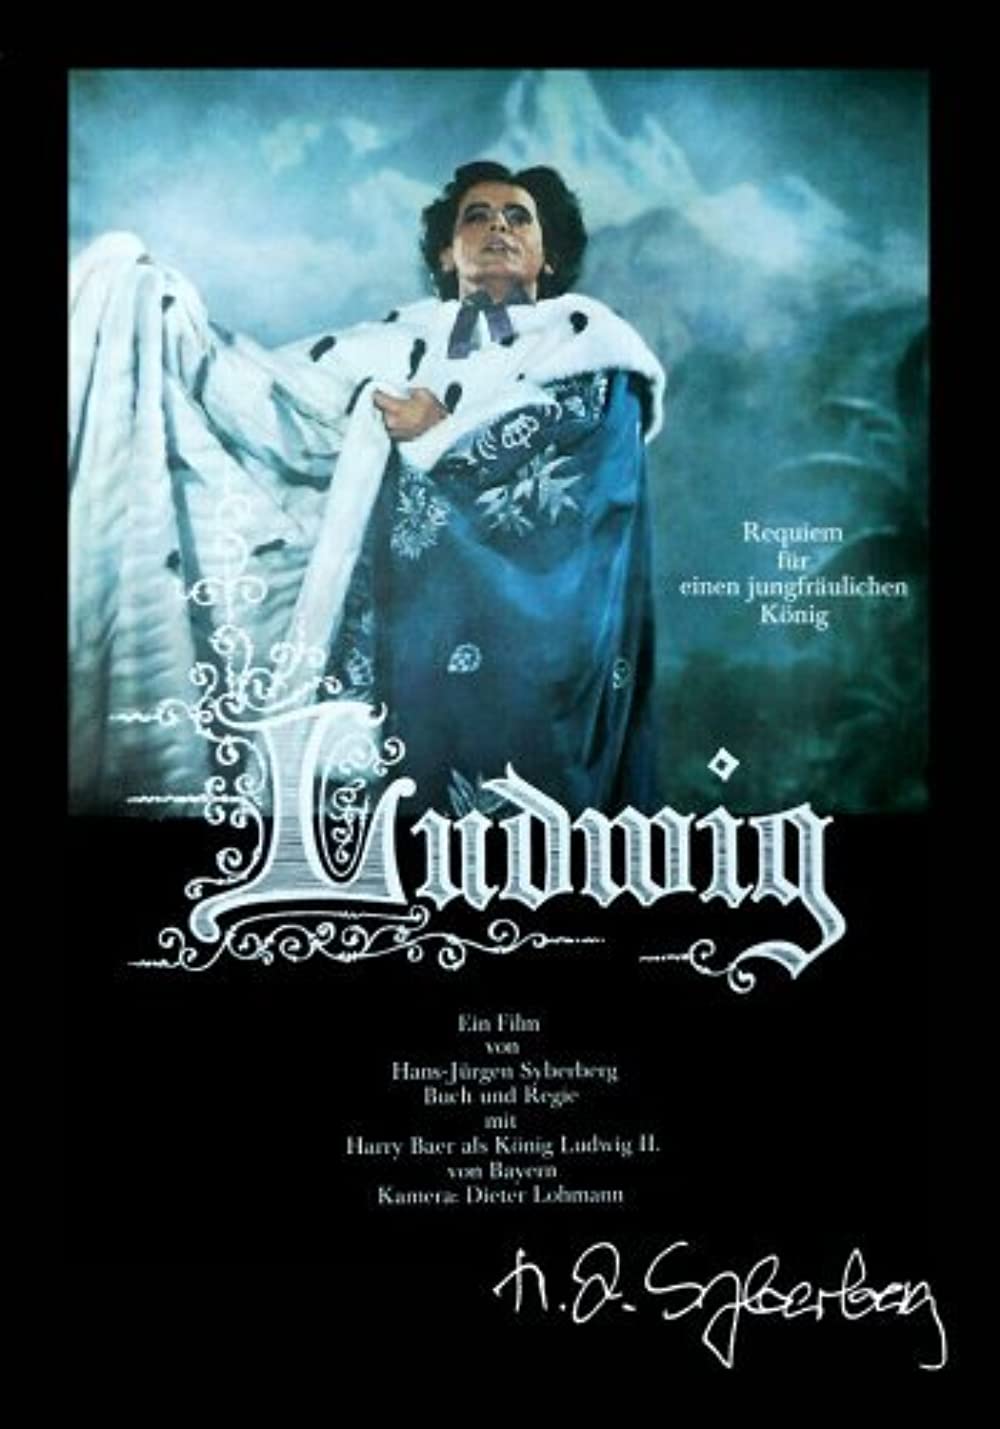 Filmbeschreibung zu Ludwig - Requiem für einen jungfräulichen König